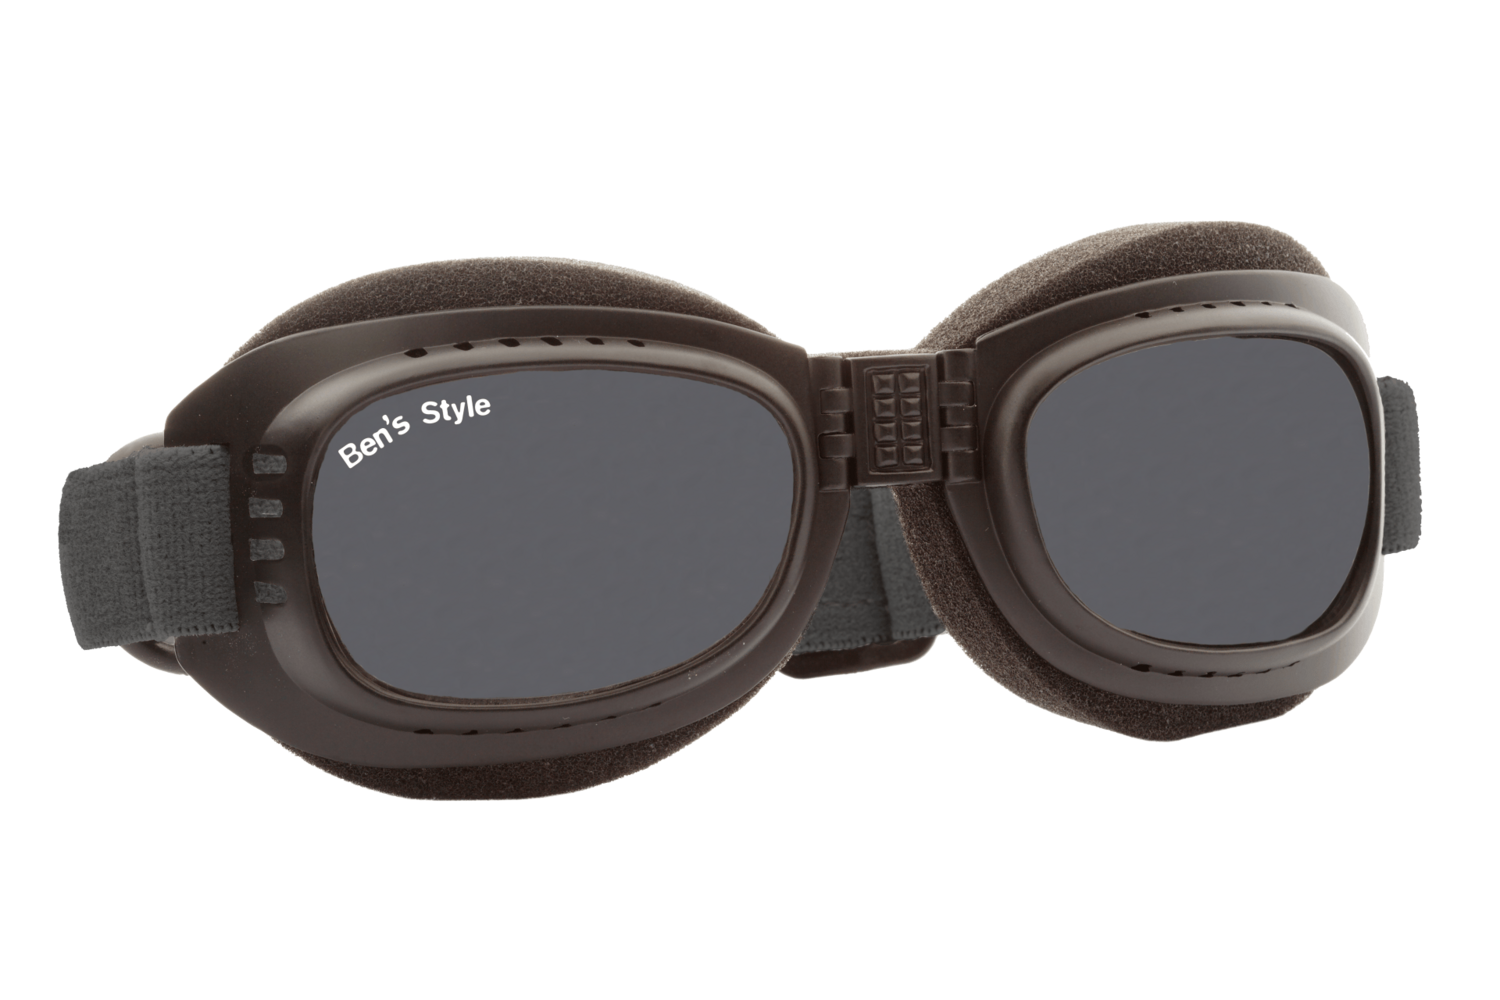 Cool I M -
Hundeschutzbrille Größe M
- Fassung: Schwarz, Gläser: Grau
Größe/Gesamtgewicht: Länge: 16,5 cm, Breite: 4,7 cm / 44 g